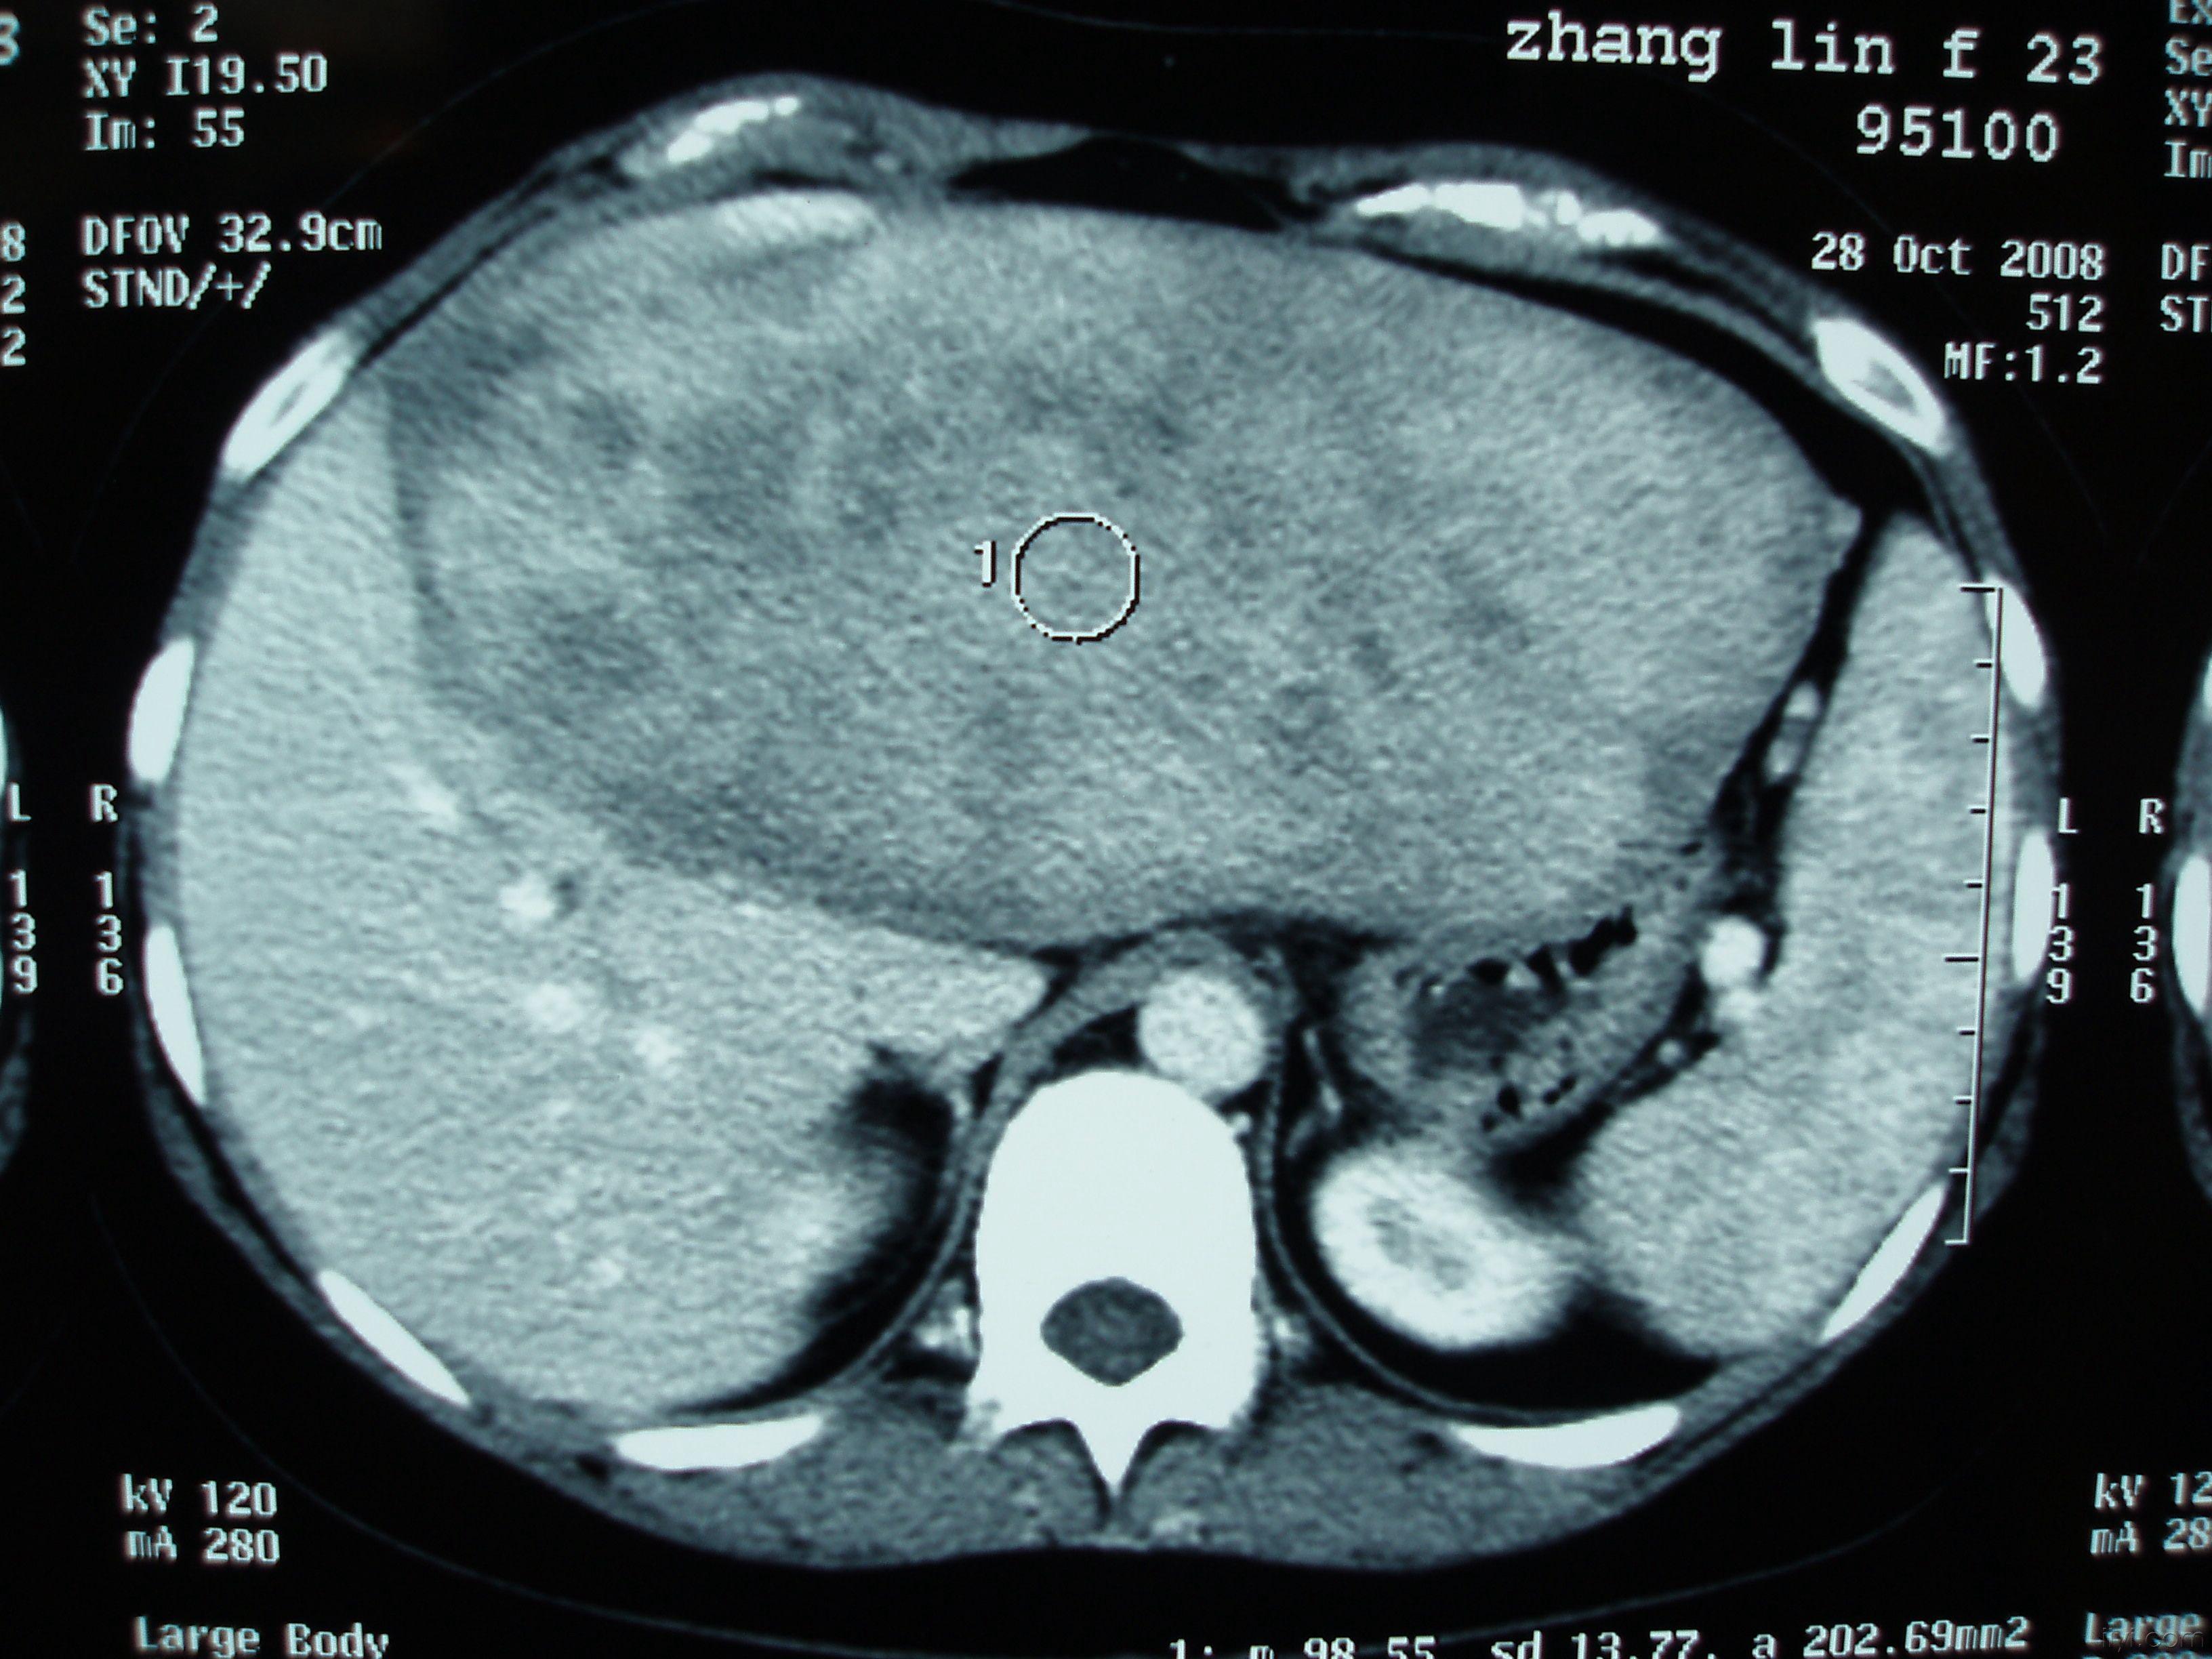 肝脏血管瘤图片 症状图片